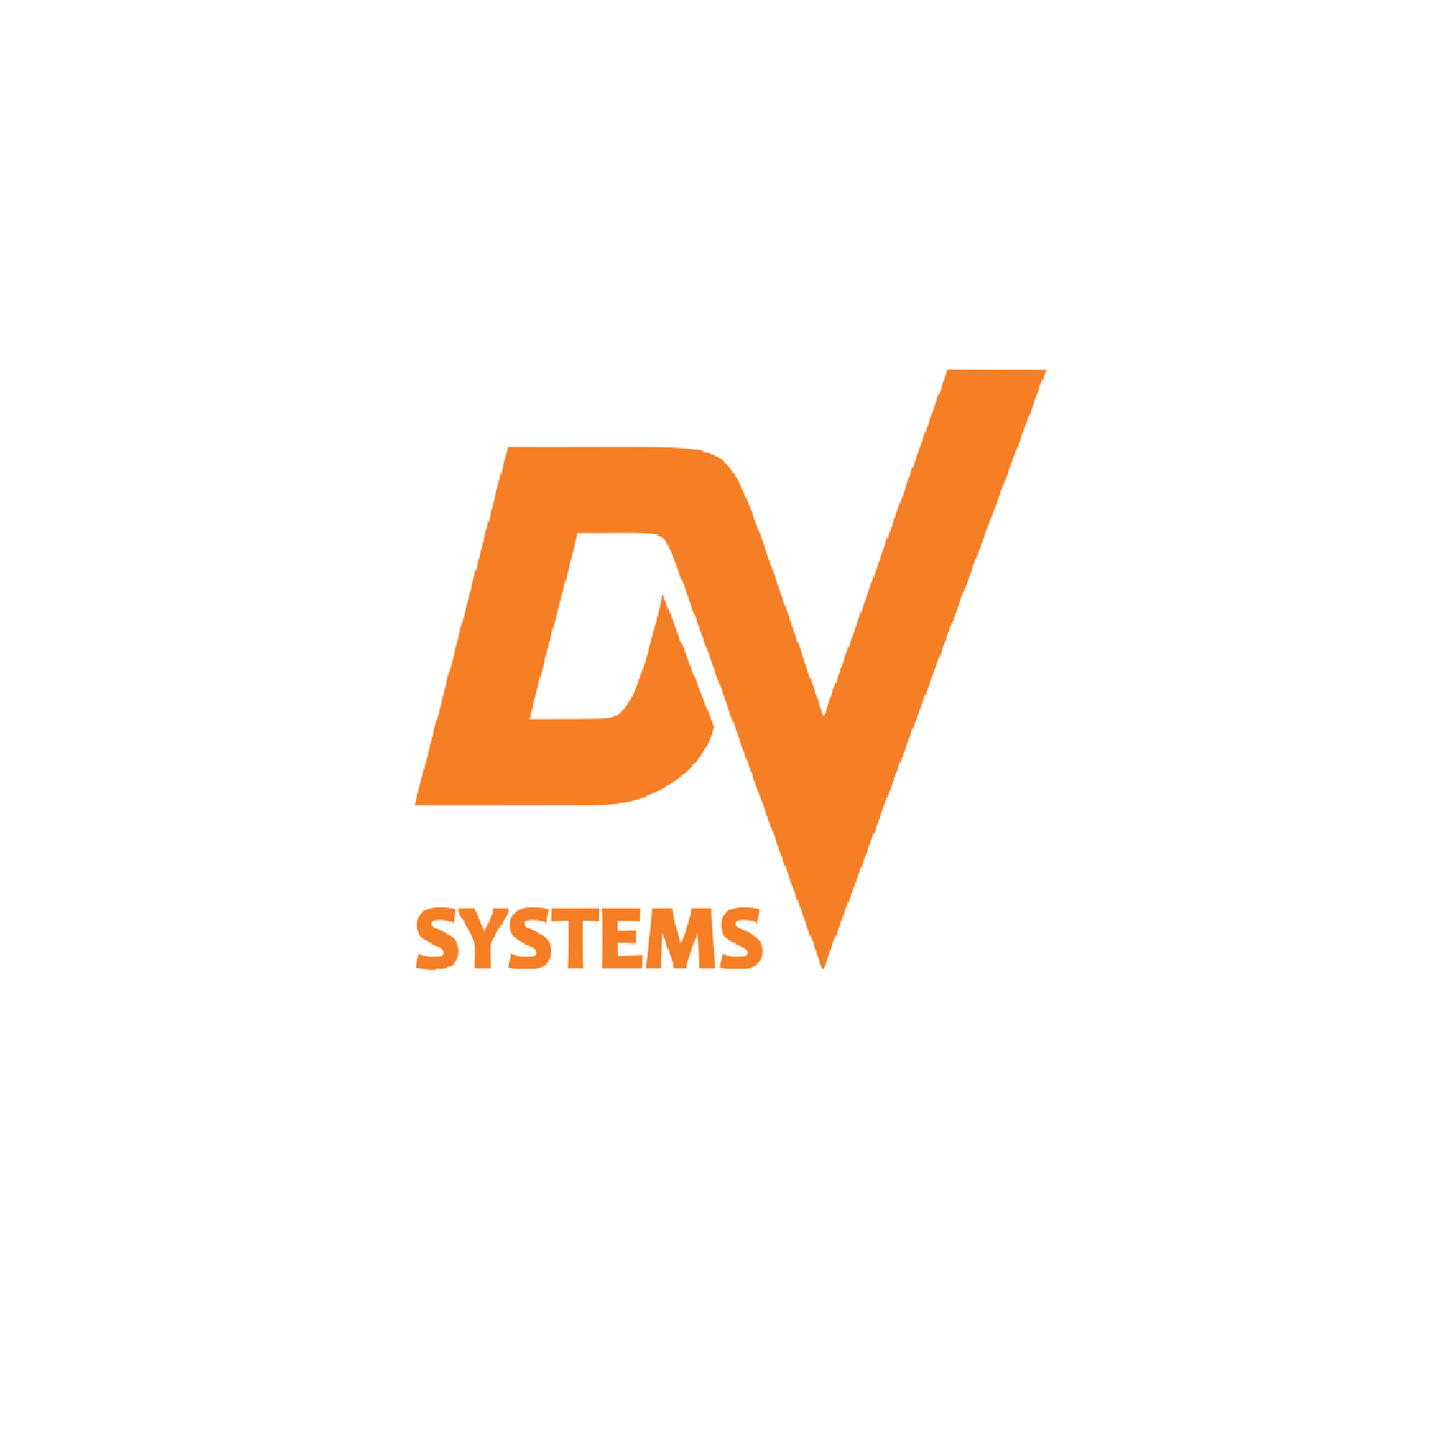 Dsc-001917 inverter 575v 100hp dv systems